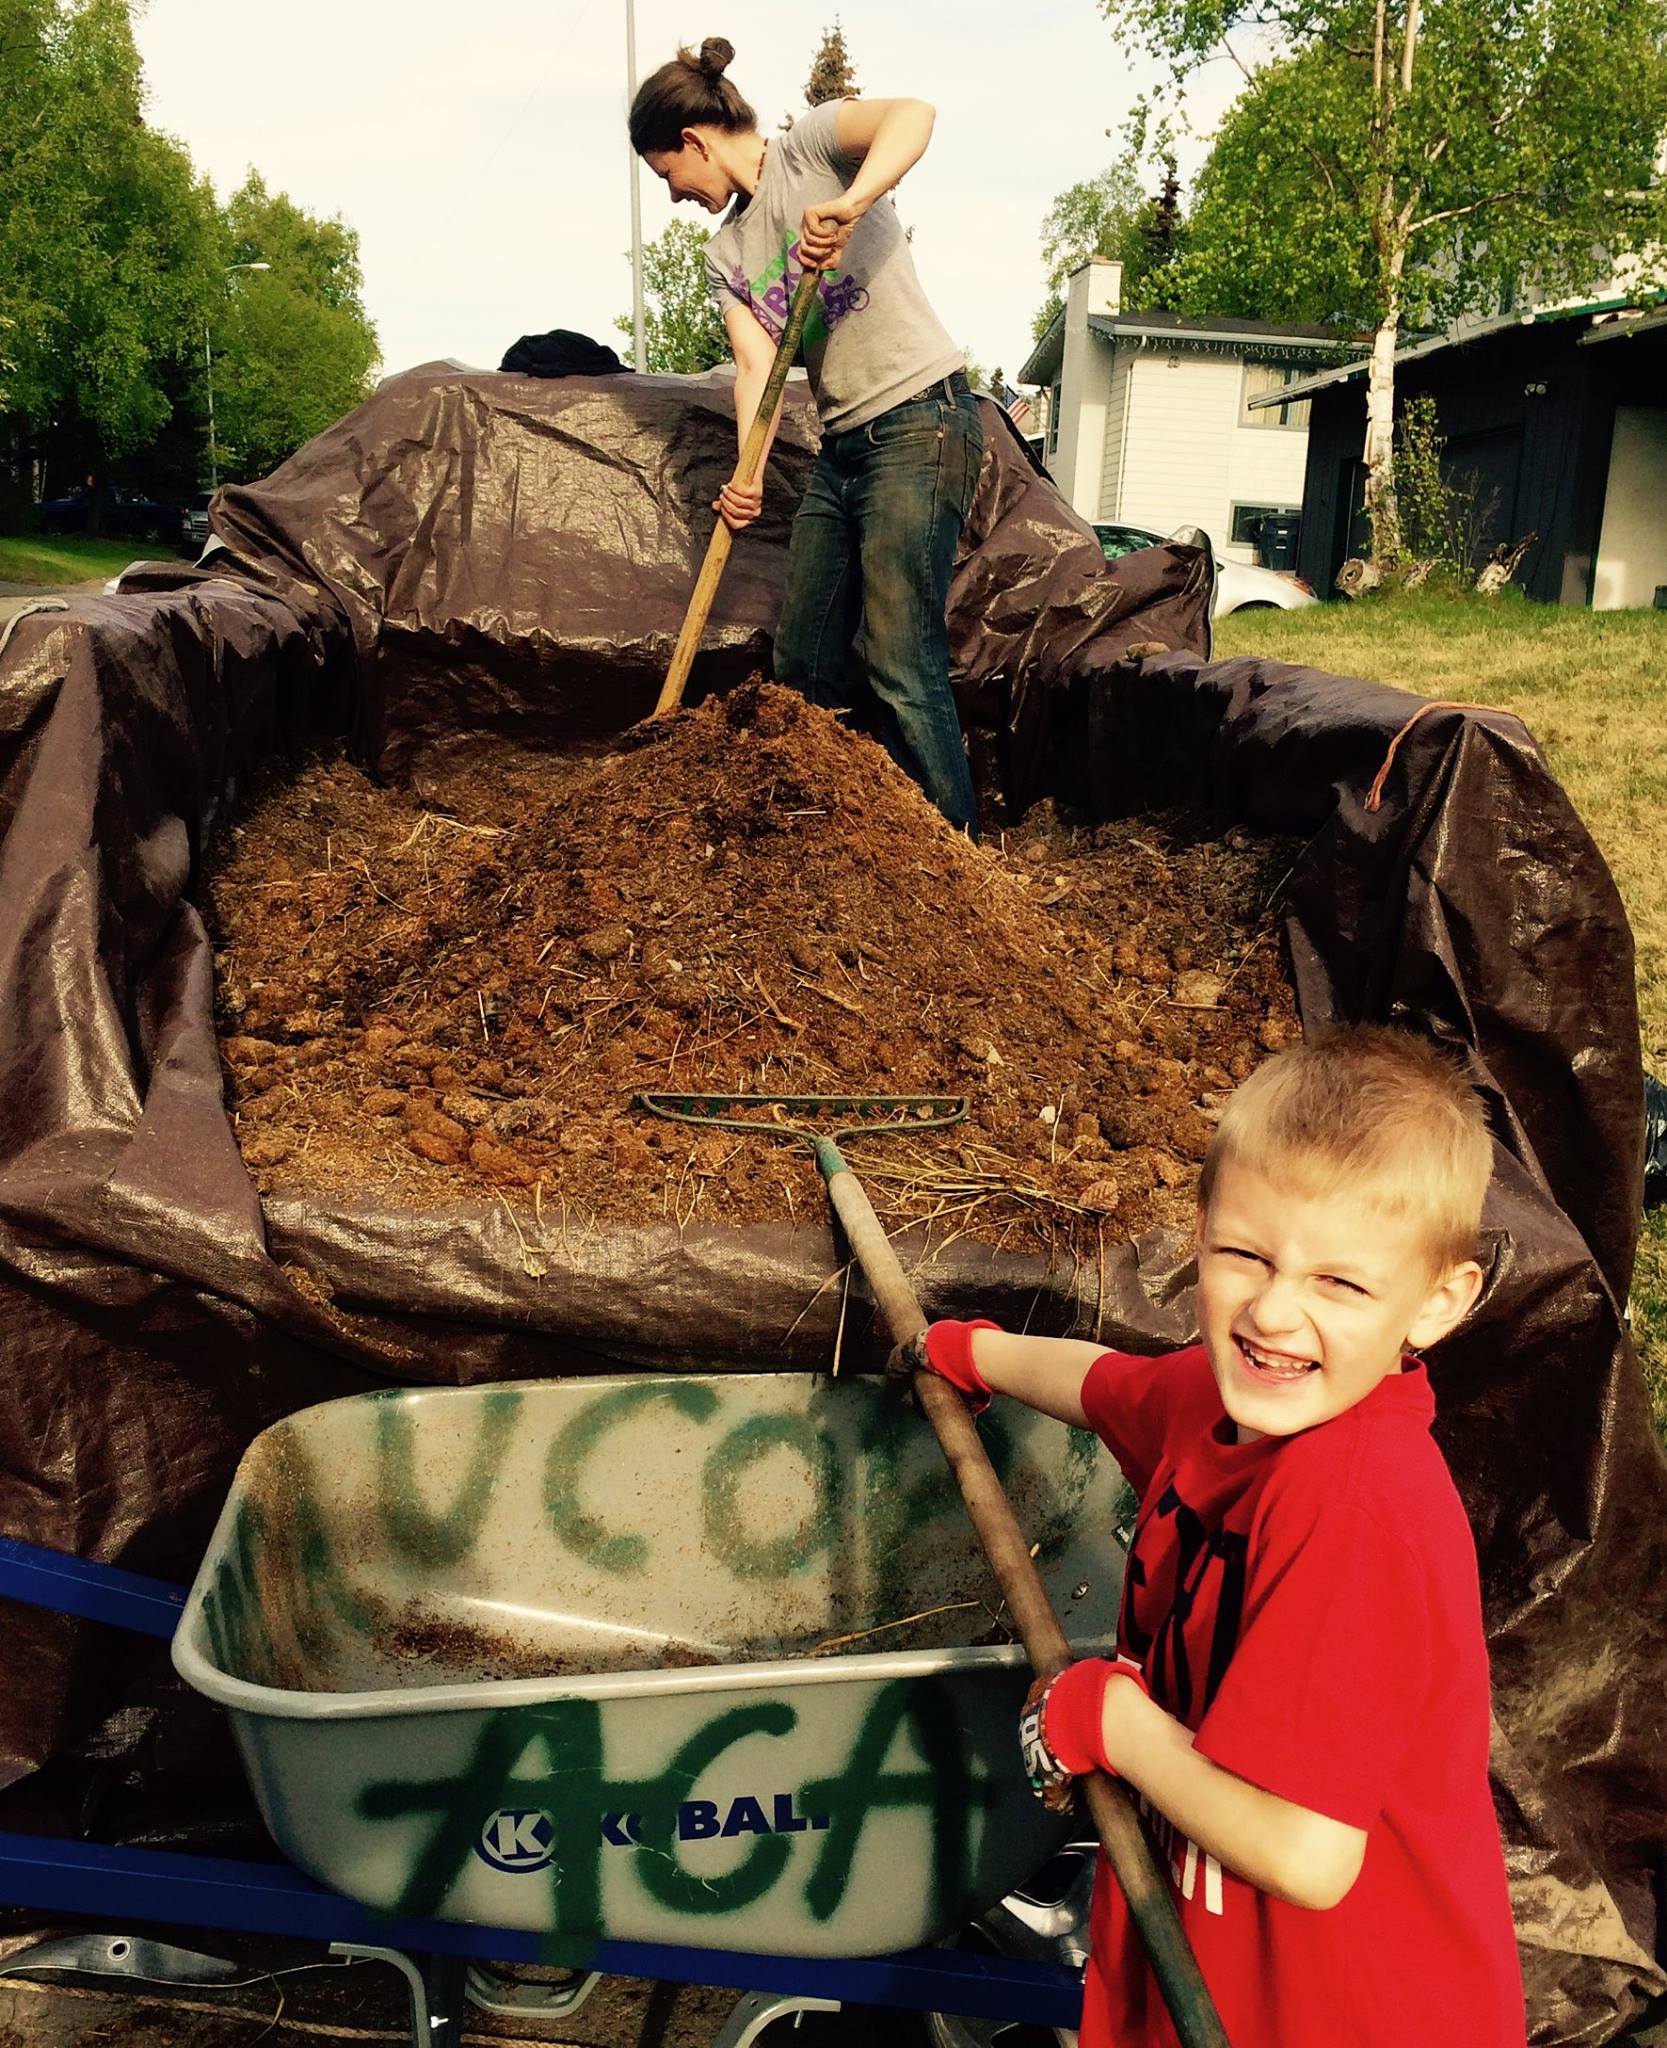 kid in garden compost